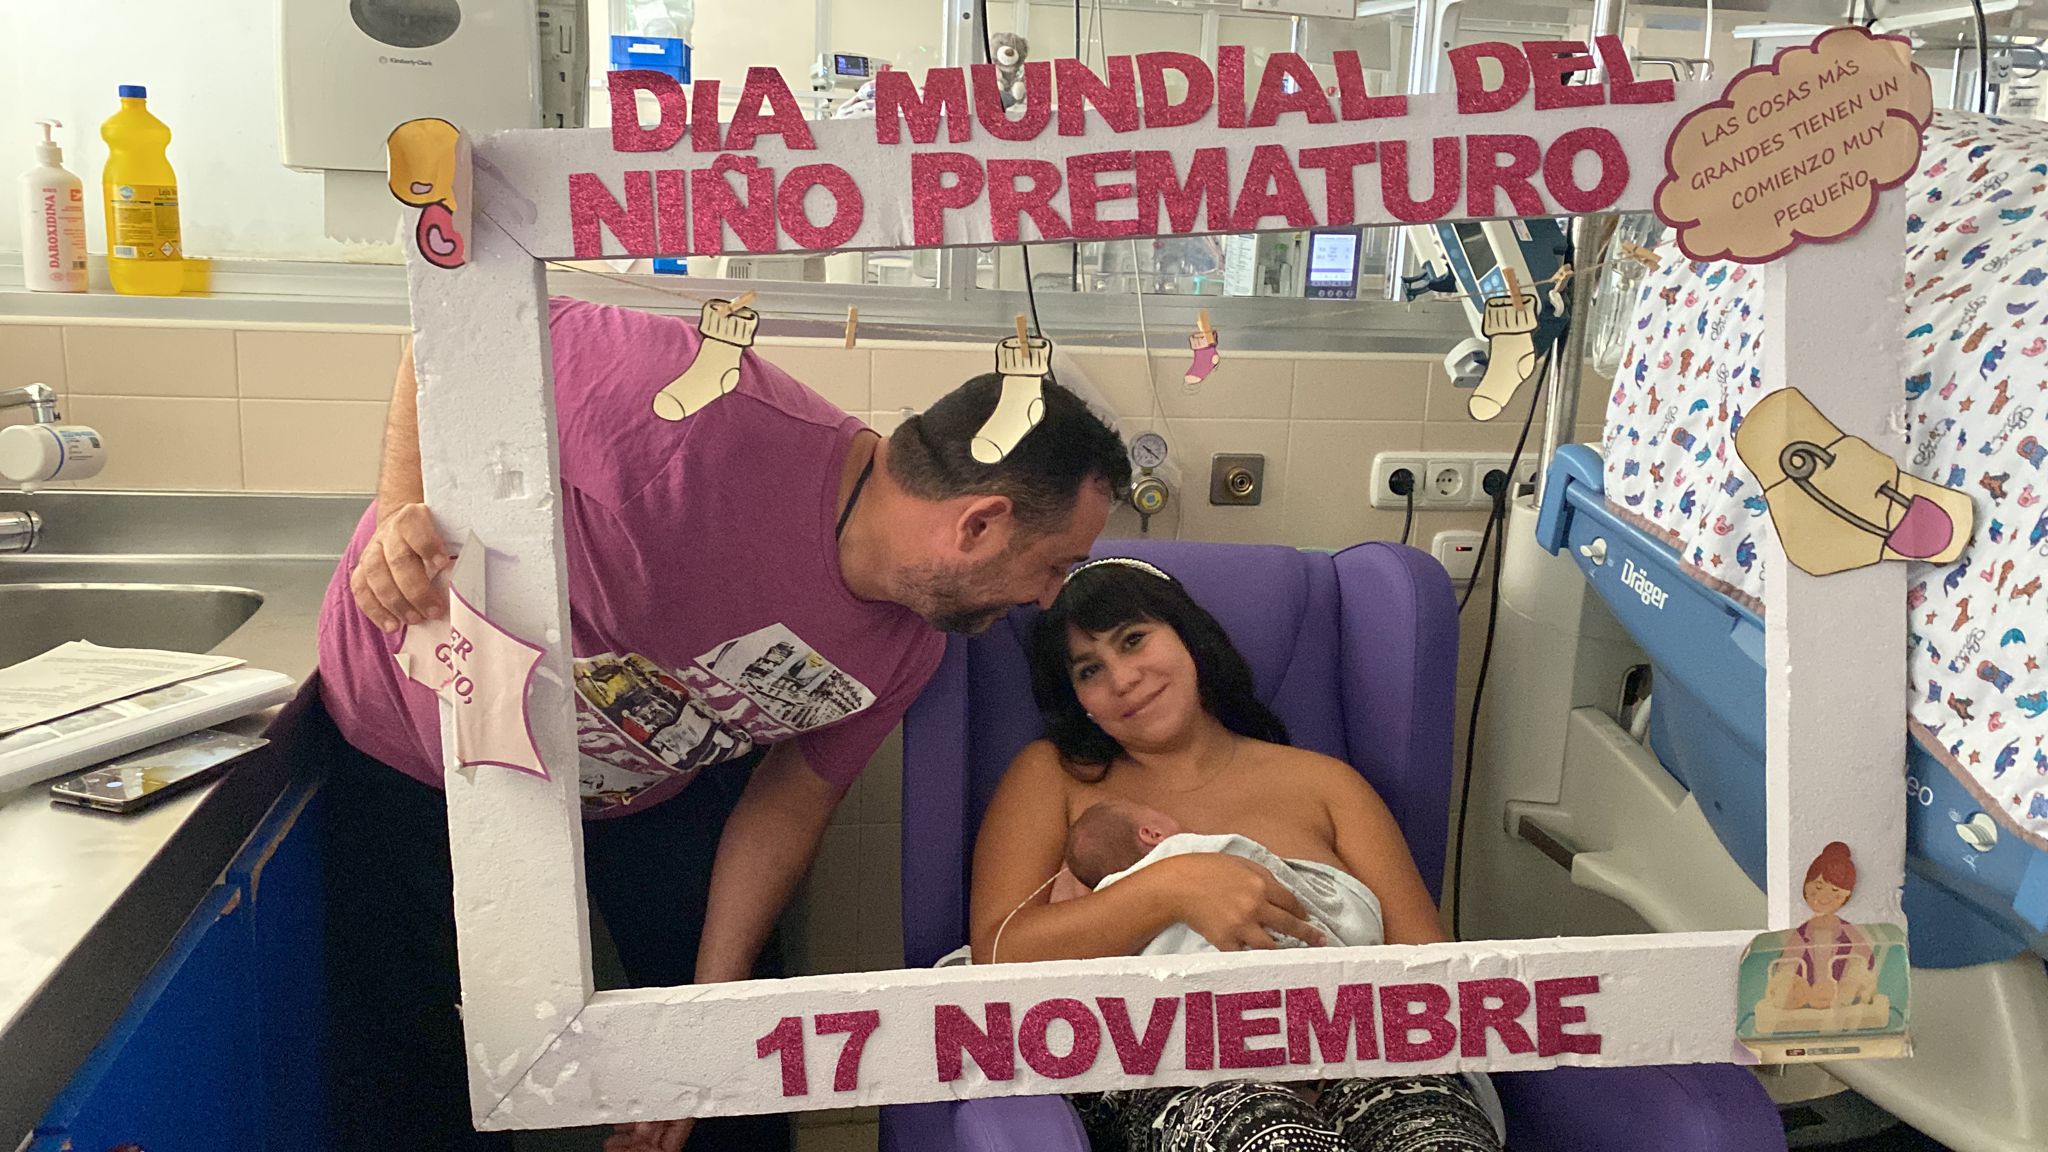 pares i professionals celebren el dia mundial del prematur